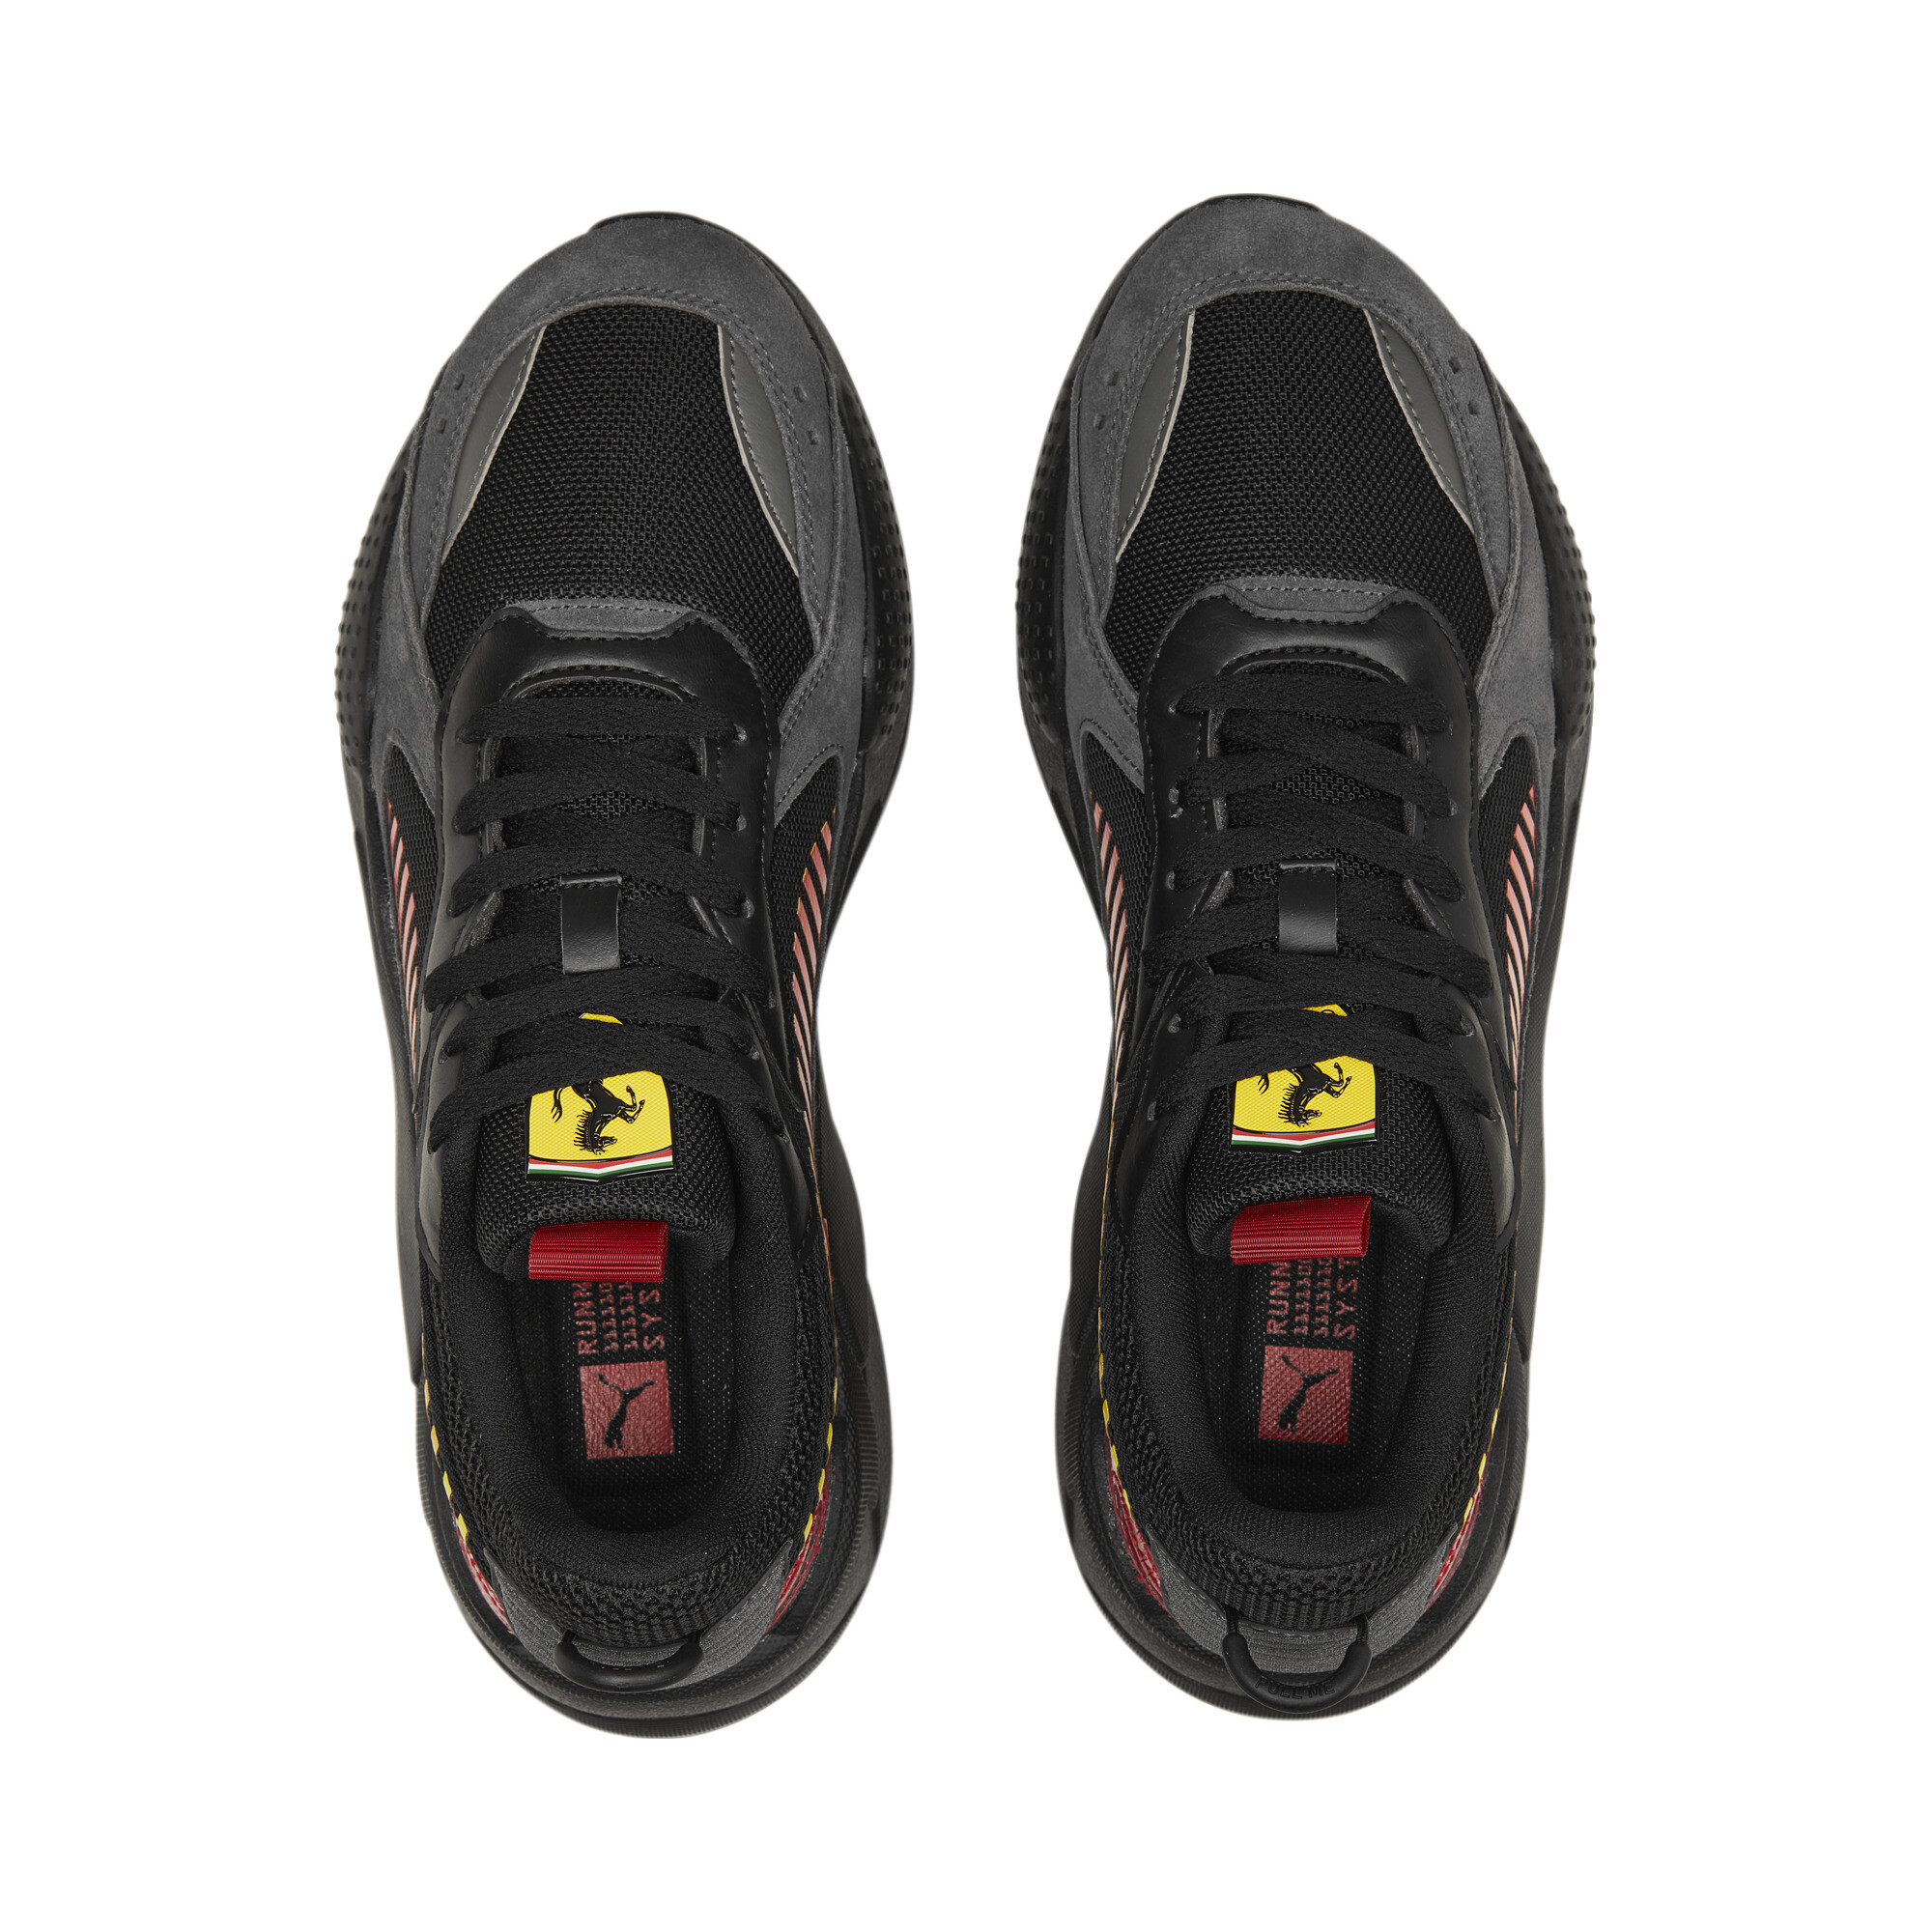 Men's PUMA Scuderia Ferrari RS-X Motorsport Shoes In Red, Size EU 44.5